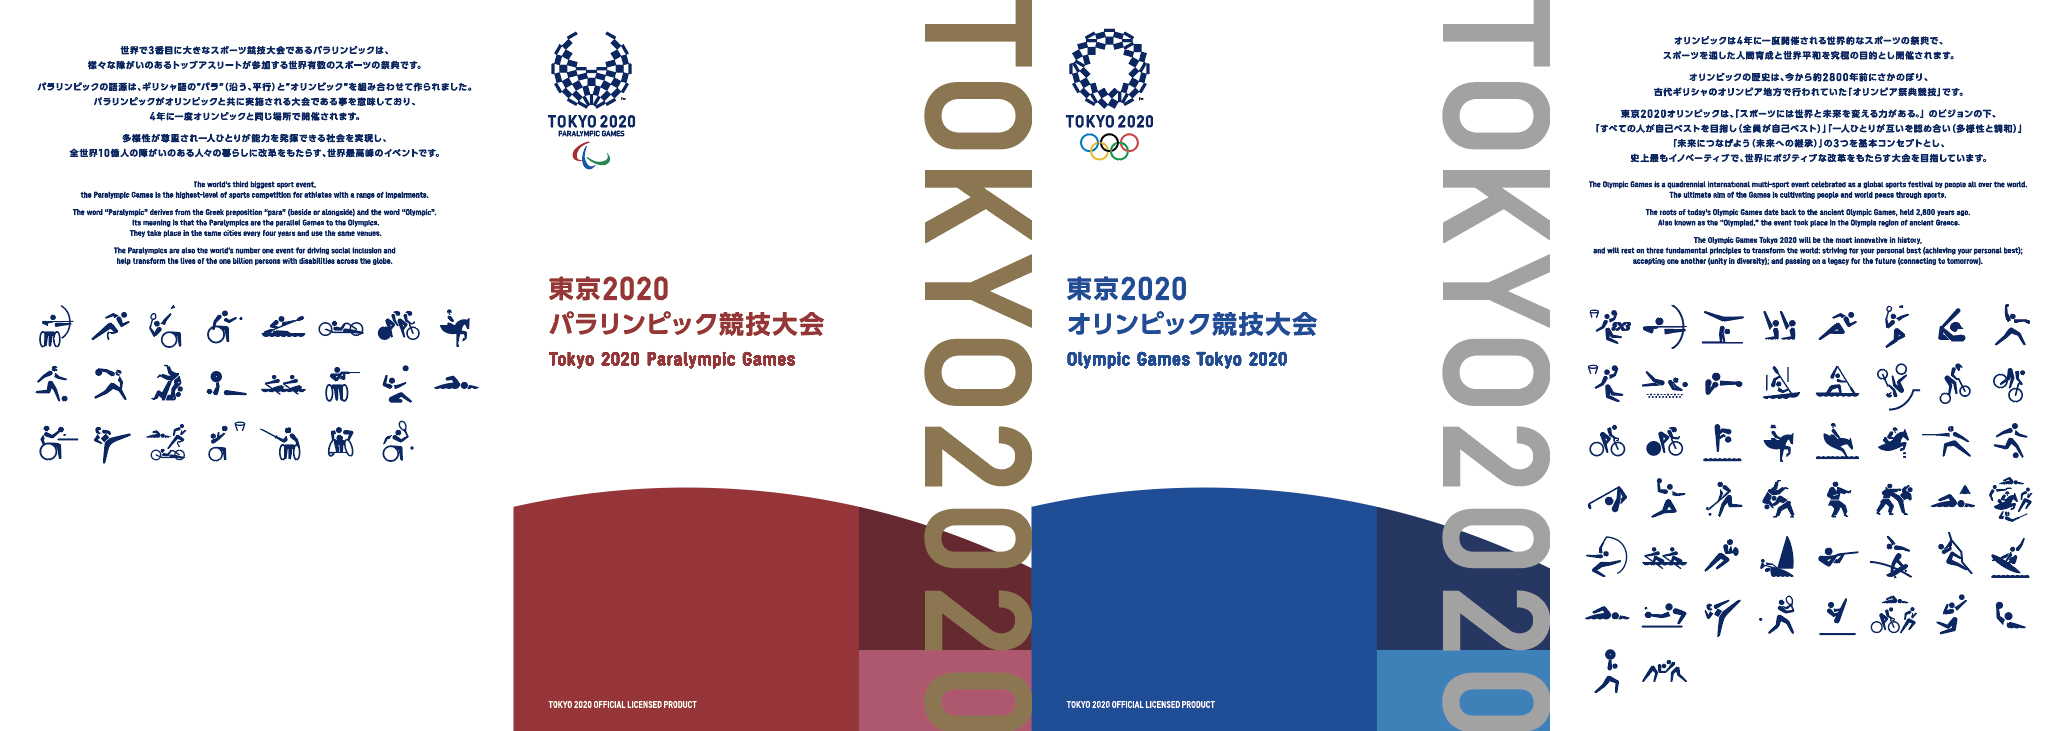 東京2020オリンピック・パラリンピック競技大会 切手帳 | 日本郵便株式会社